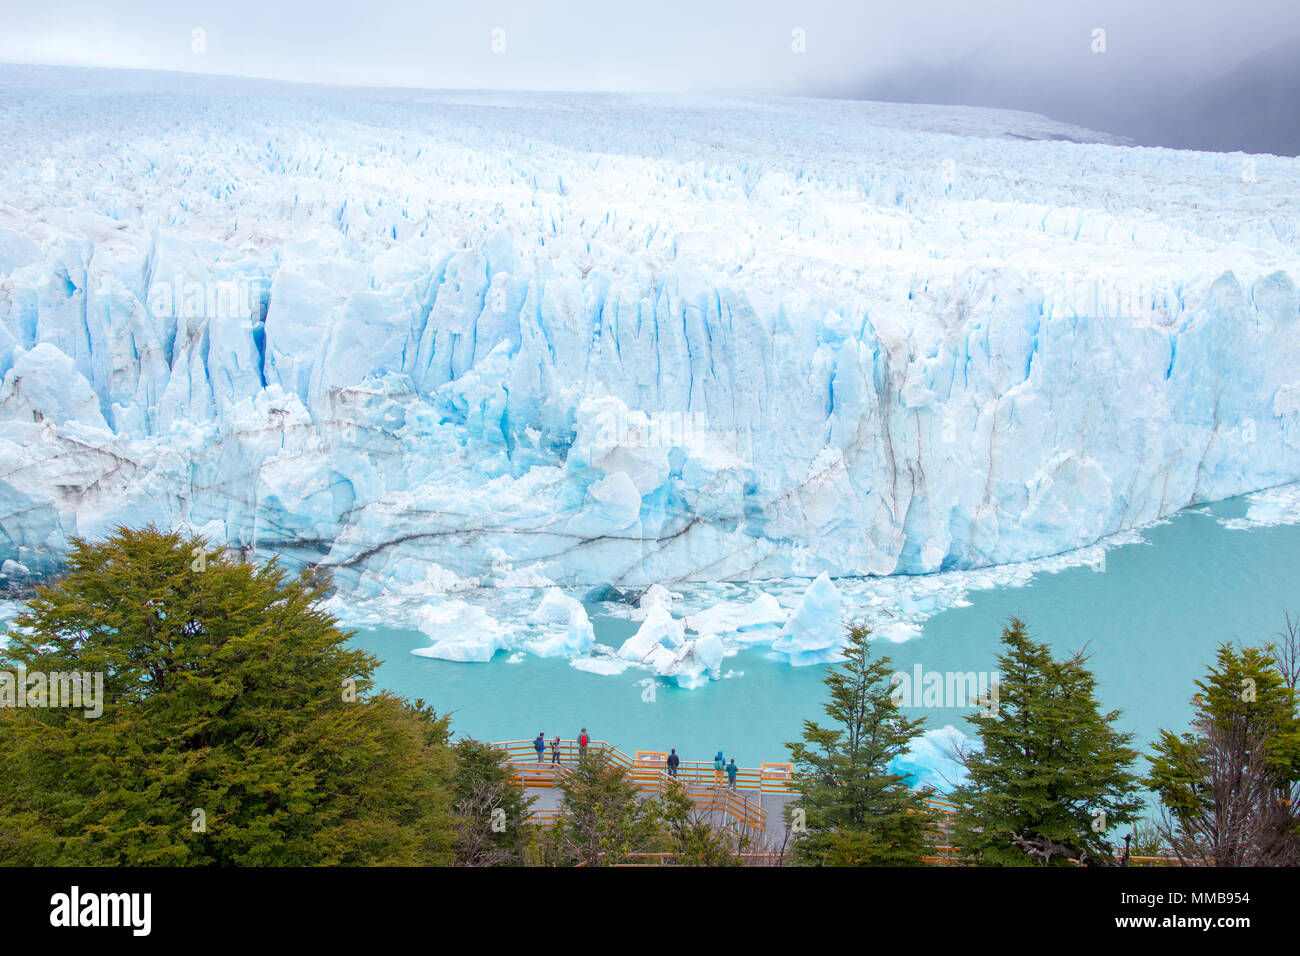 Perito Moreno Glacier, Parque Nacional Los Glaciares, Argentina Stock Photo